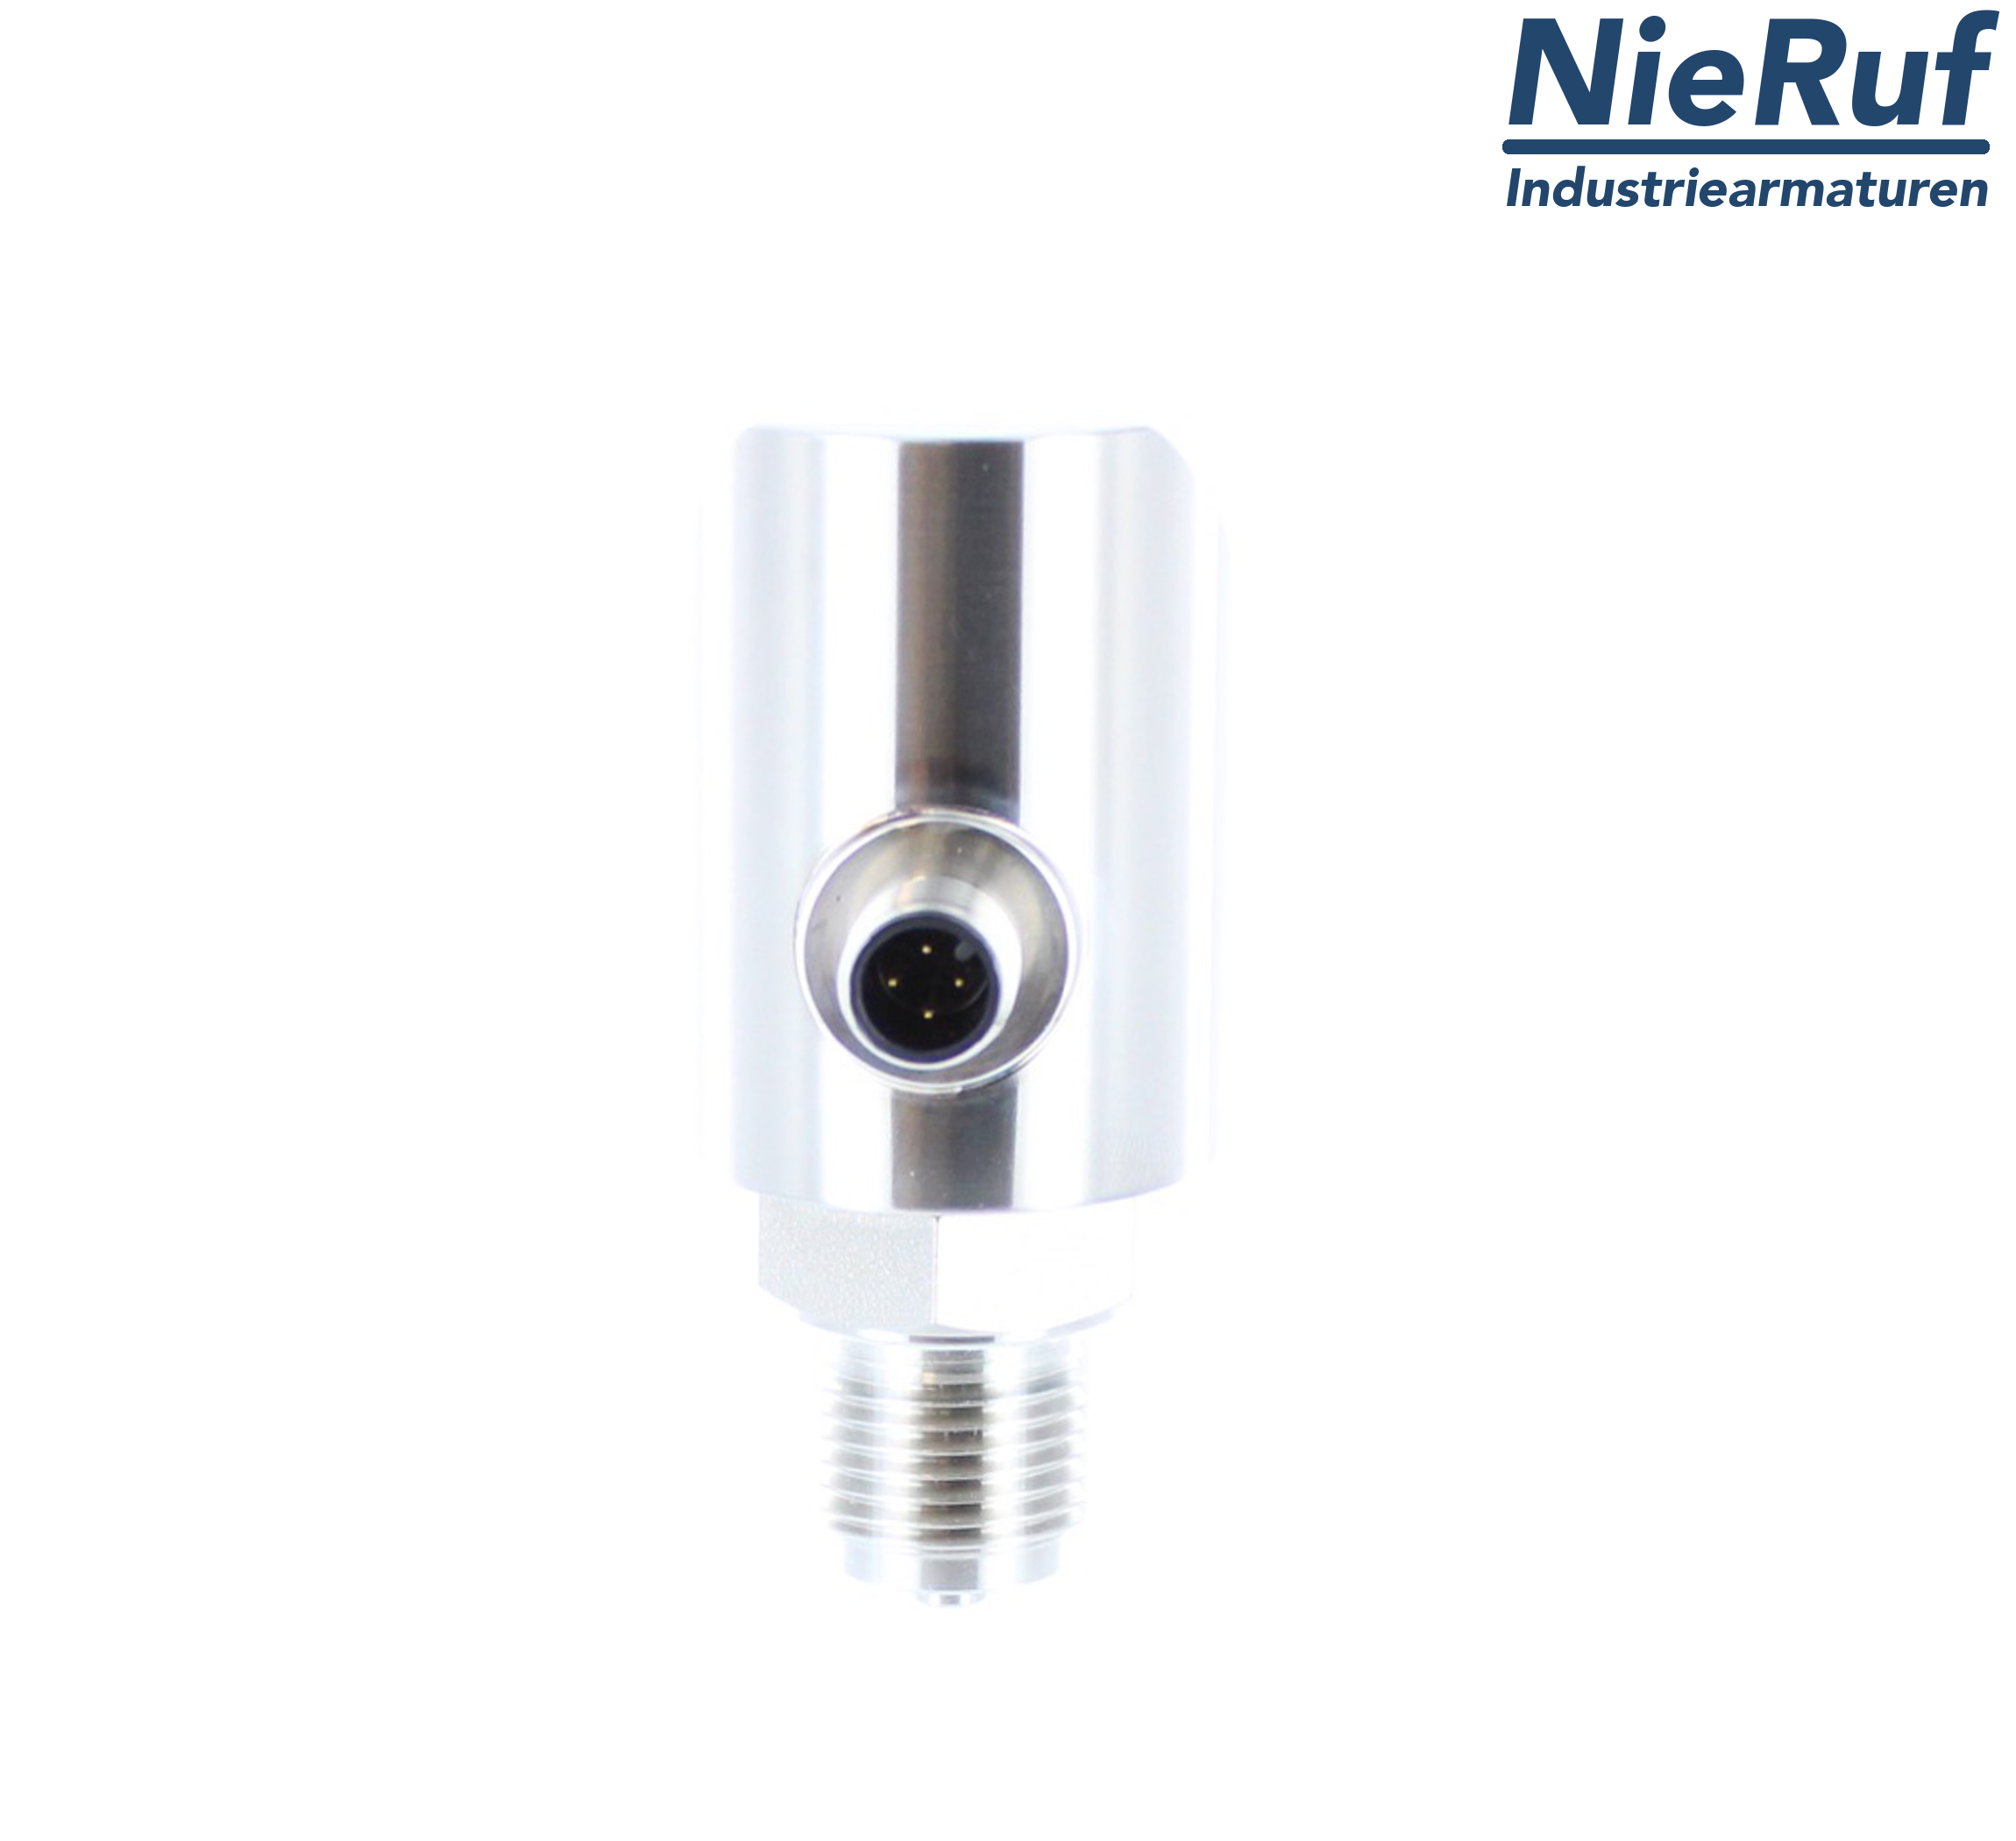 digital pressure sensor G 1/4" B 4-wire: 1xPNP, 1x4 - 20mA, Desina FPM 0,0 - 40,0 bar